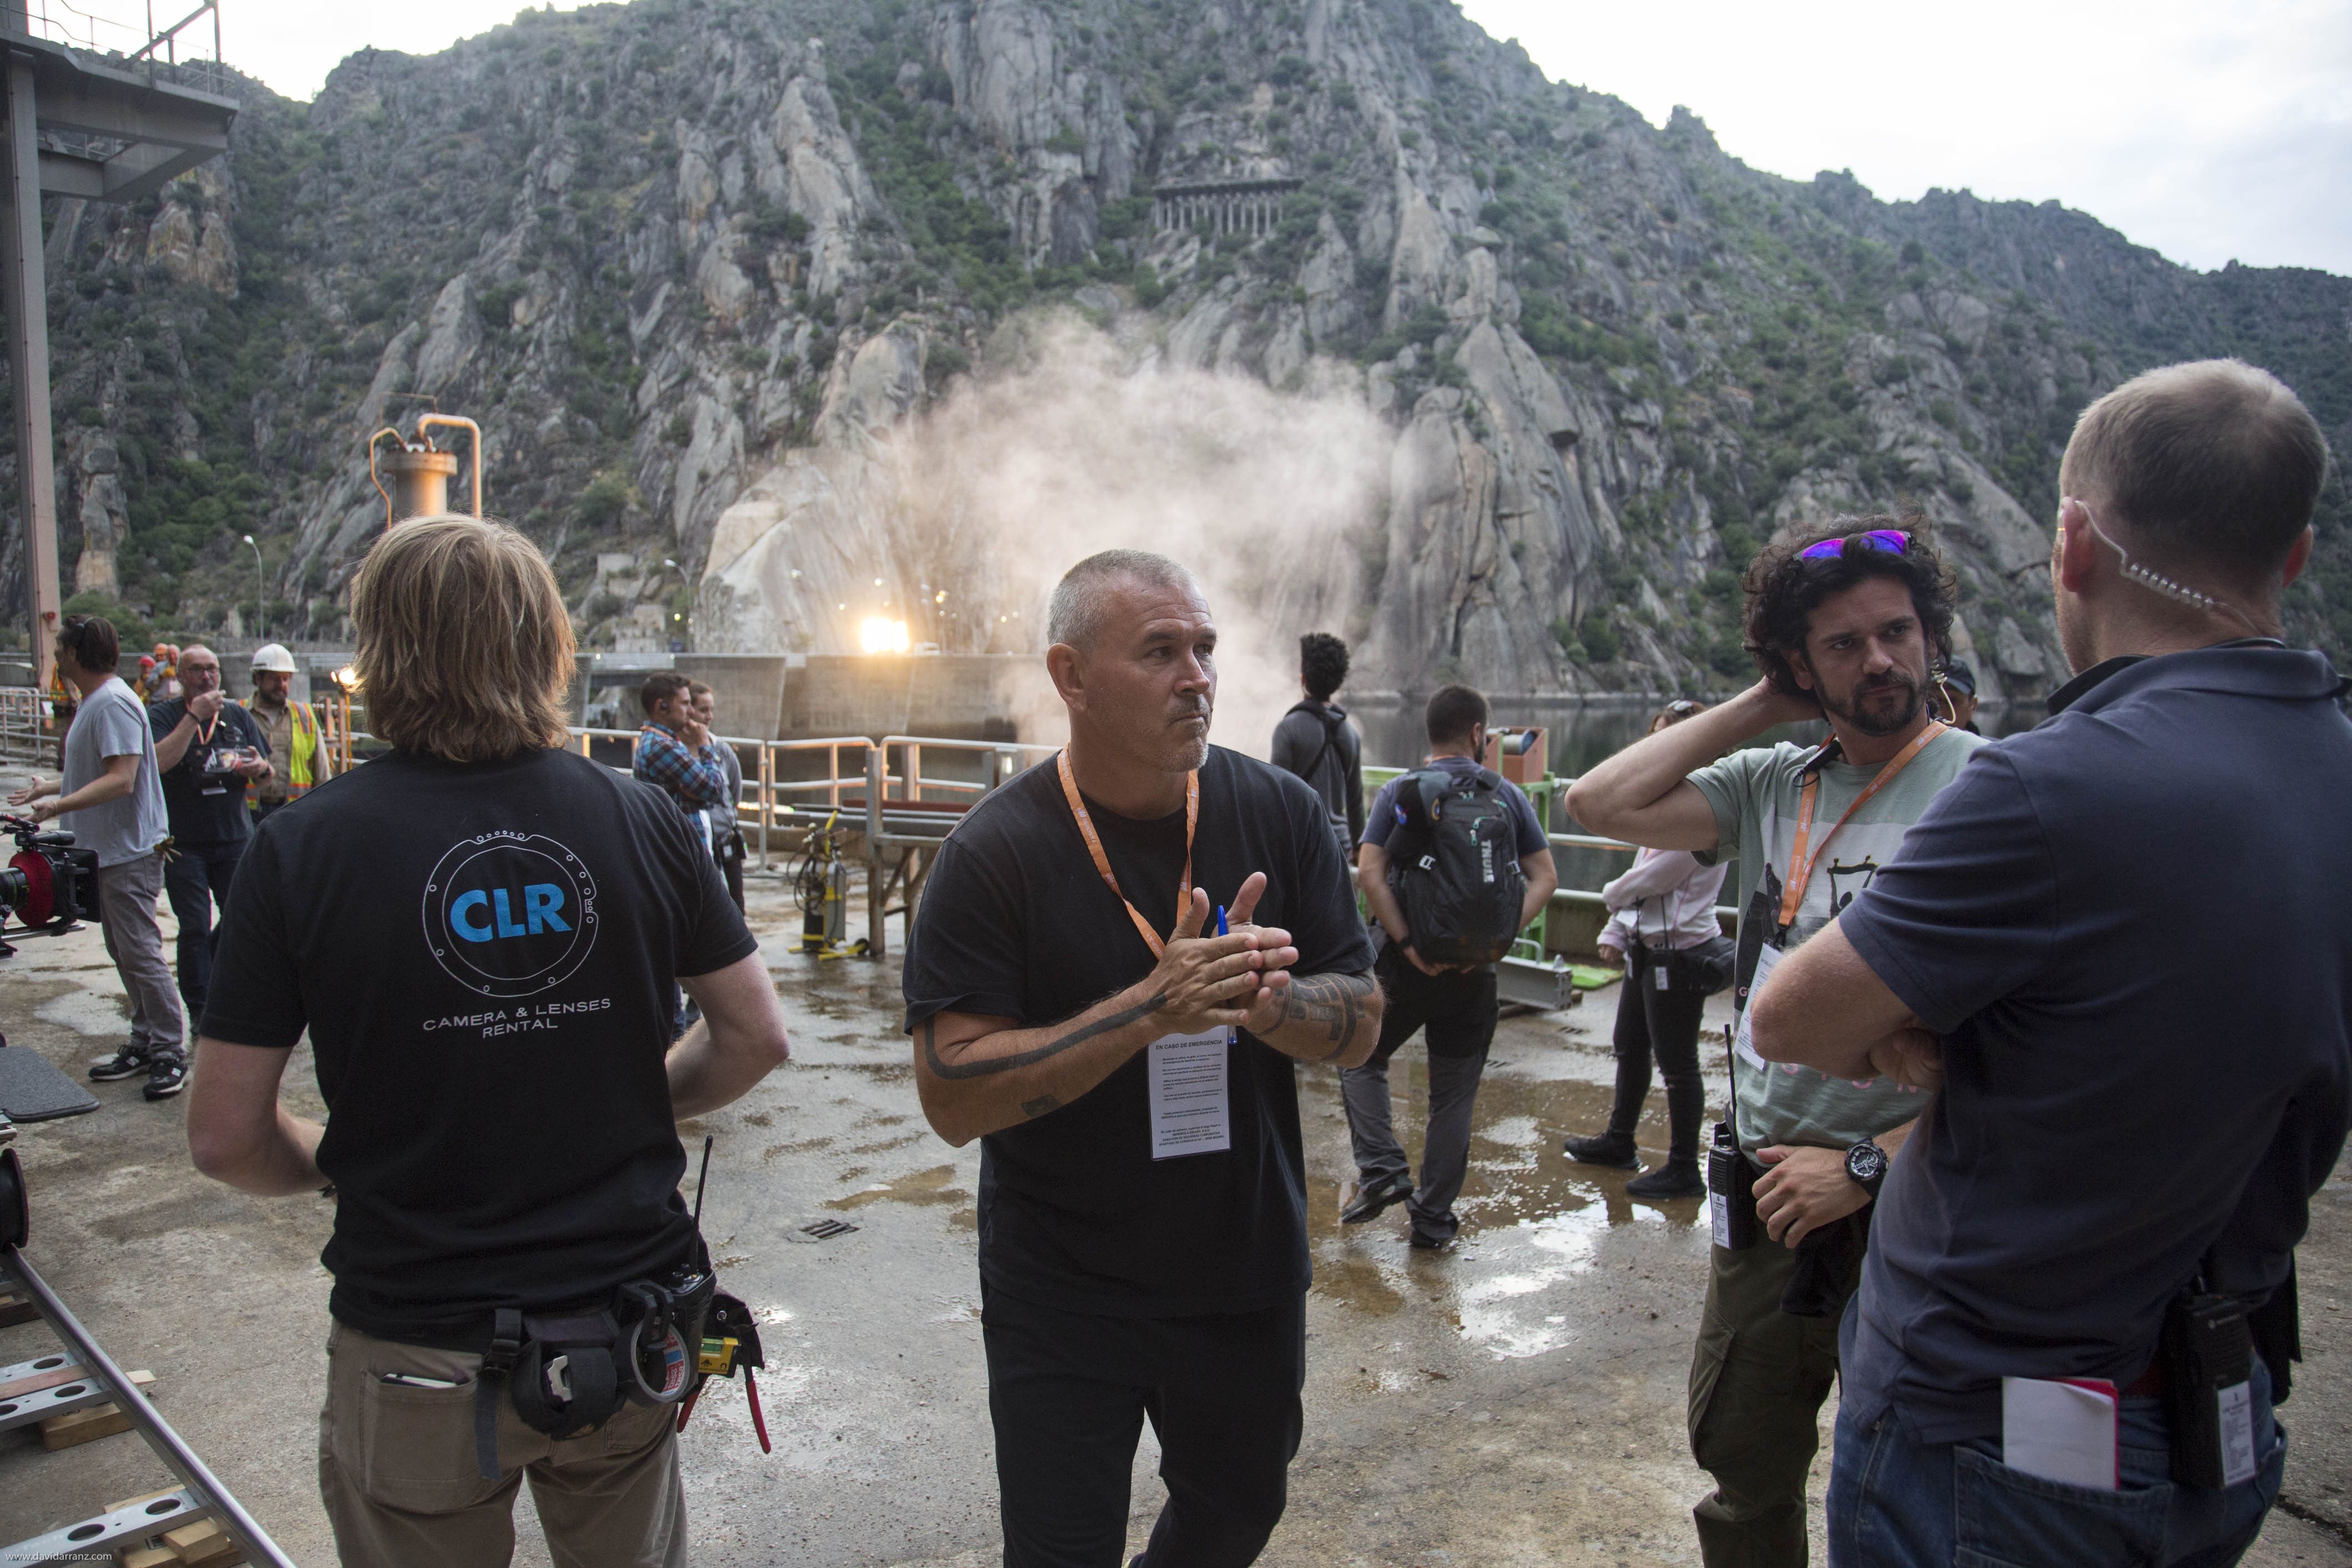  2019 11. El director, Tim Miller, durante el día de rodaje en la presa 